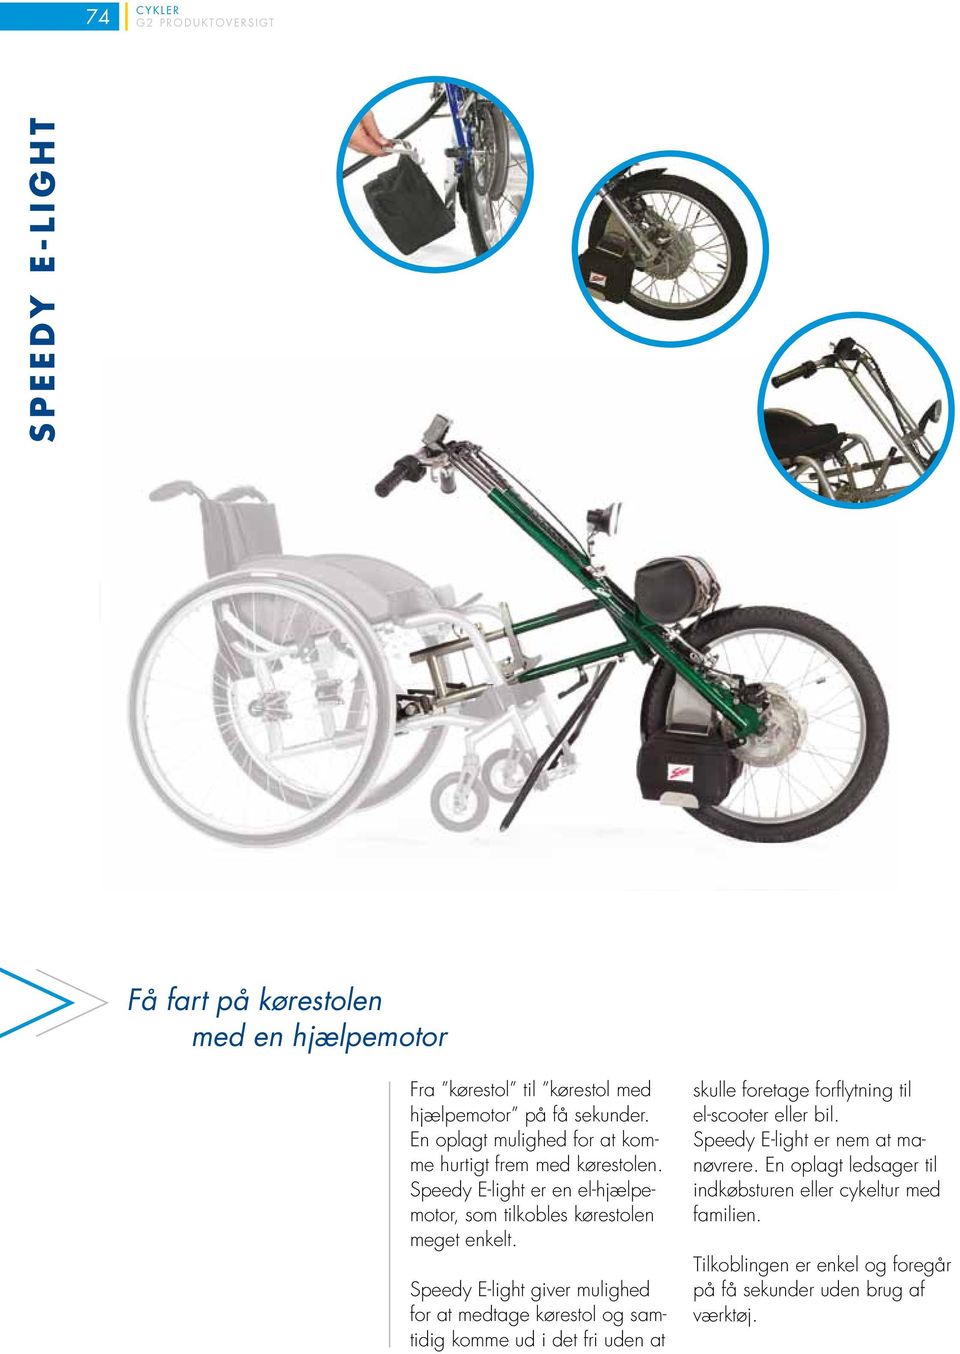 Speedy E-light giver mulighed for at medtage kørestol og samtidig komme ud i det fri uden at skulle foretage forflytning til el-scooter eller bil.